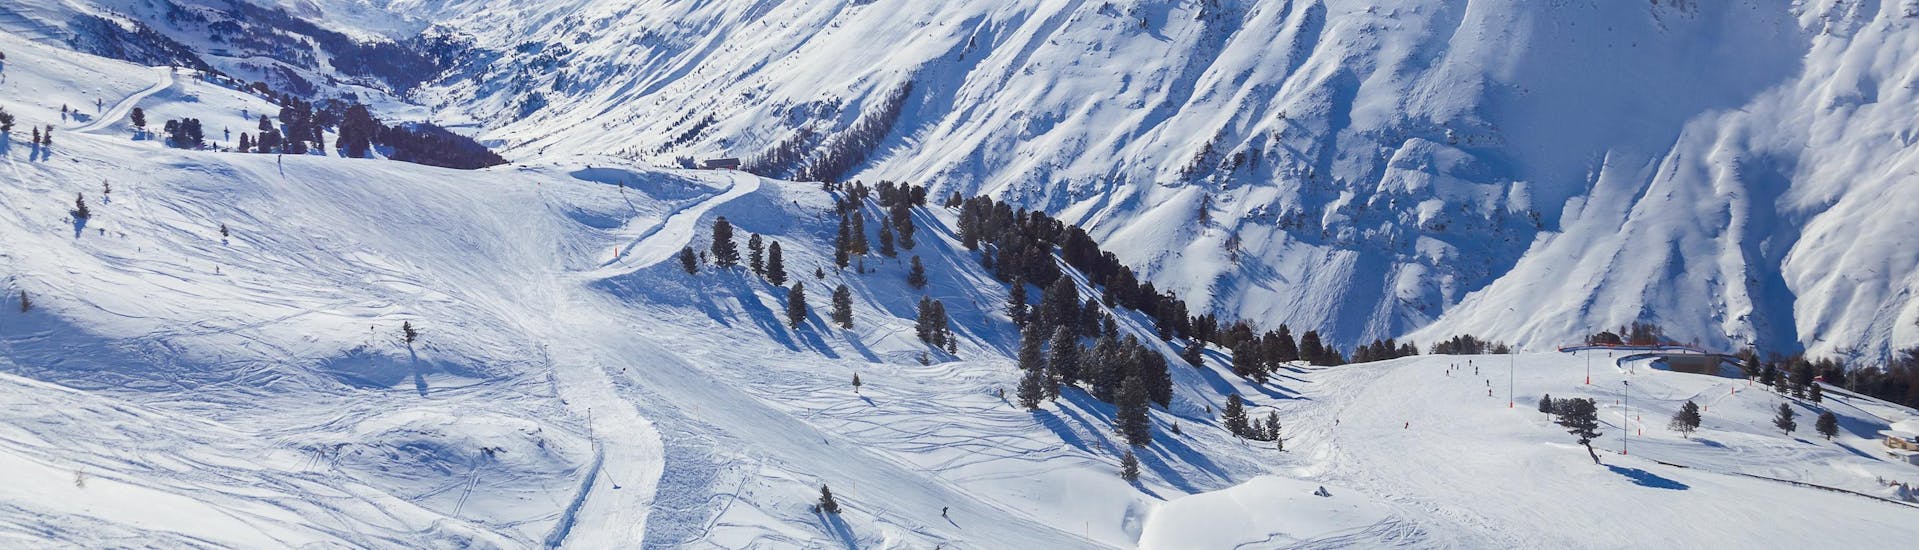 Blick auf die alpine Landschaft des Skigebiets Obergurgl, wo die örtlichen Skischulen ihre Skikurse anbieten.